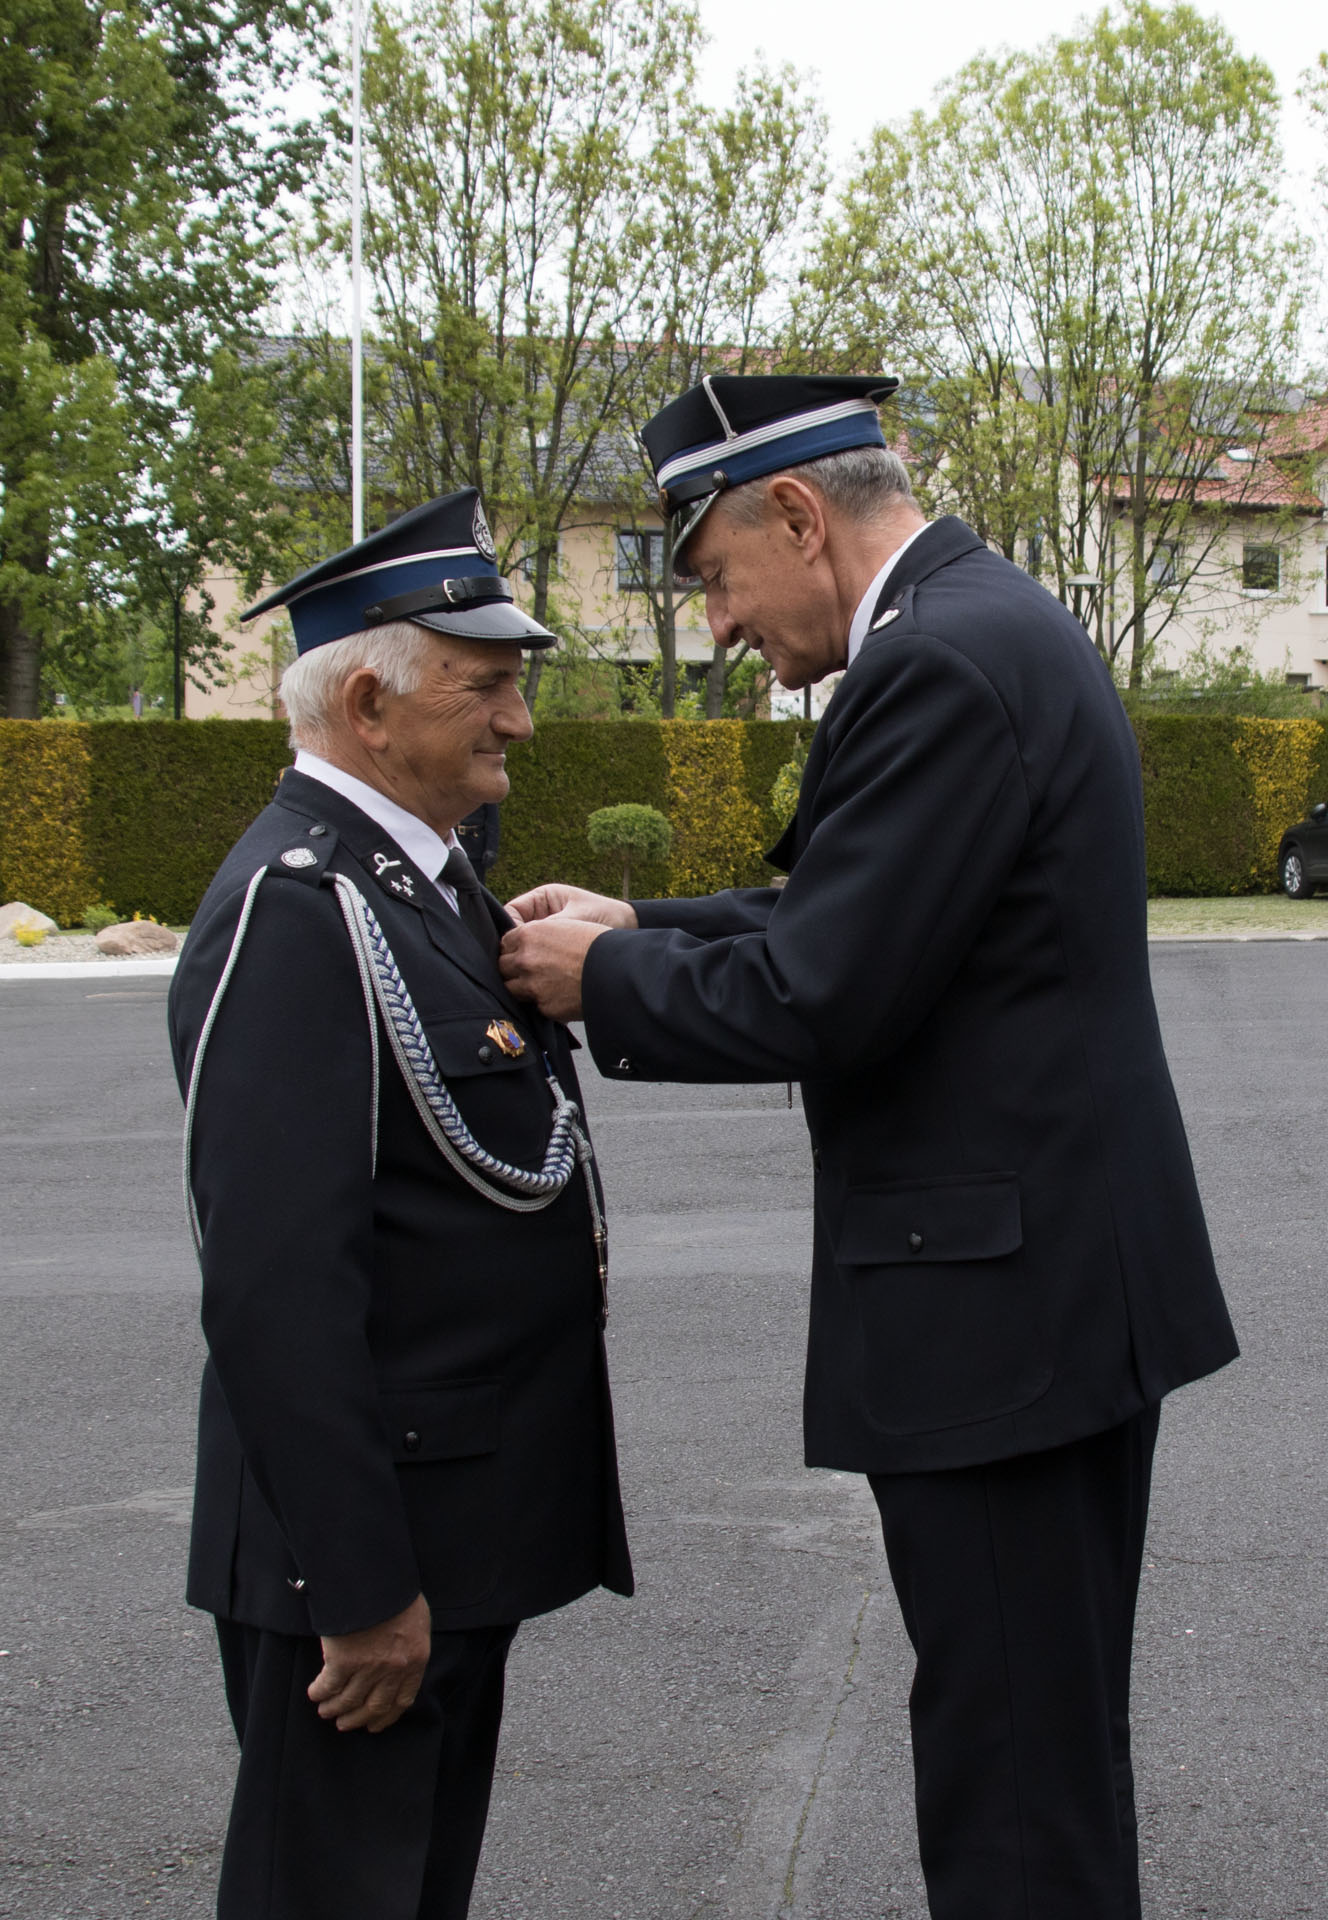 Powiatowe obchody Dnia Strażaka - Honorowy Medal im. Hellmanna otrzymał dh Zygmunt Łyko z OSP Wysoka